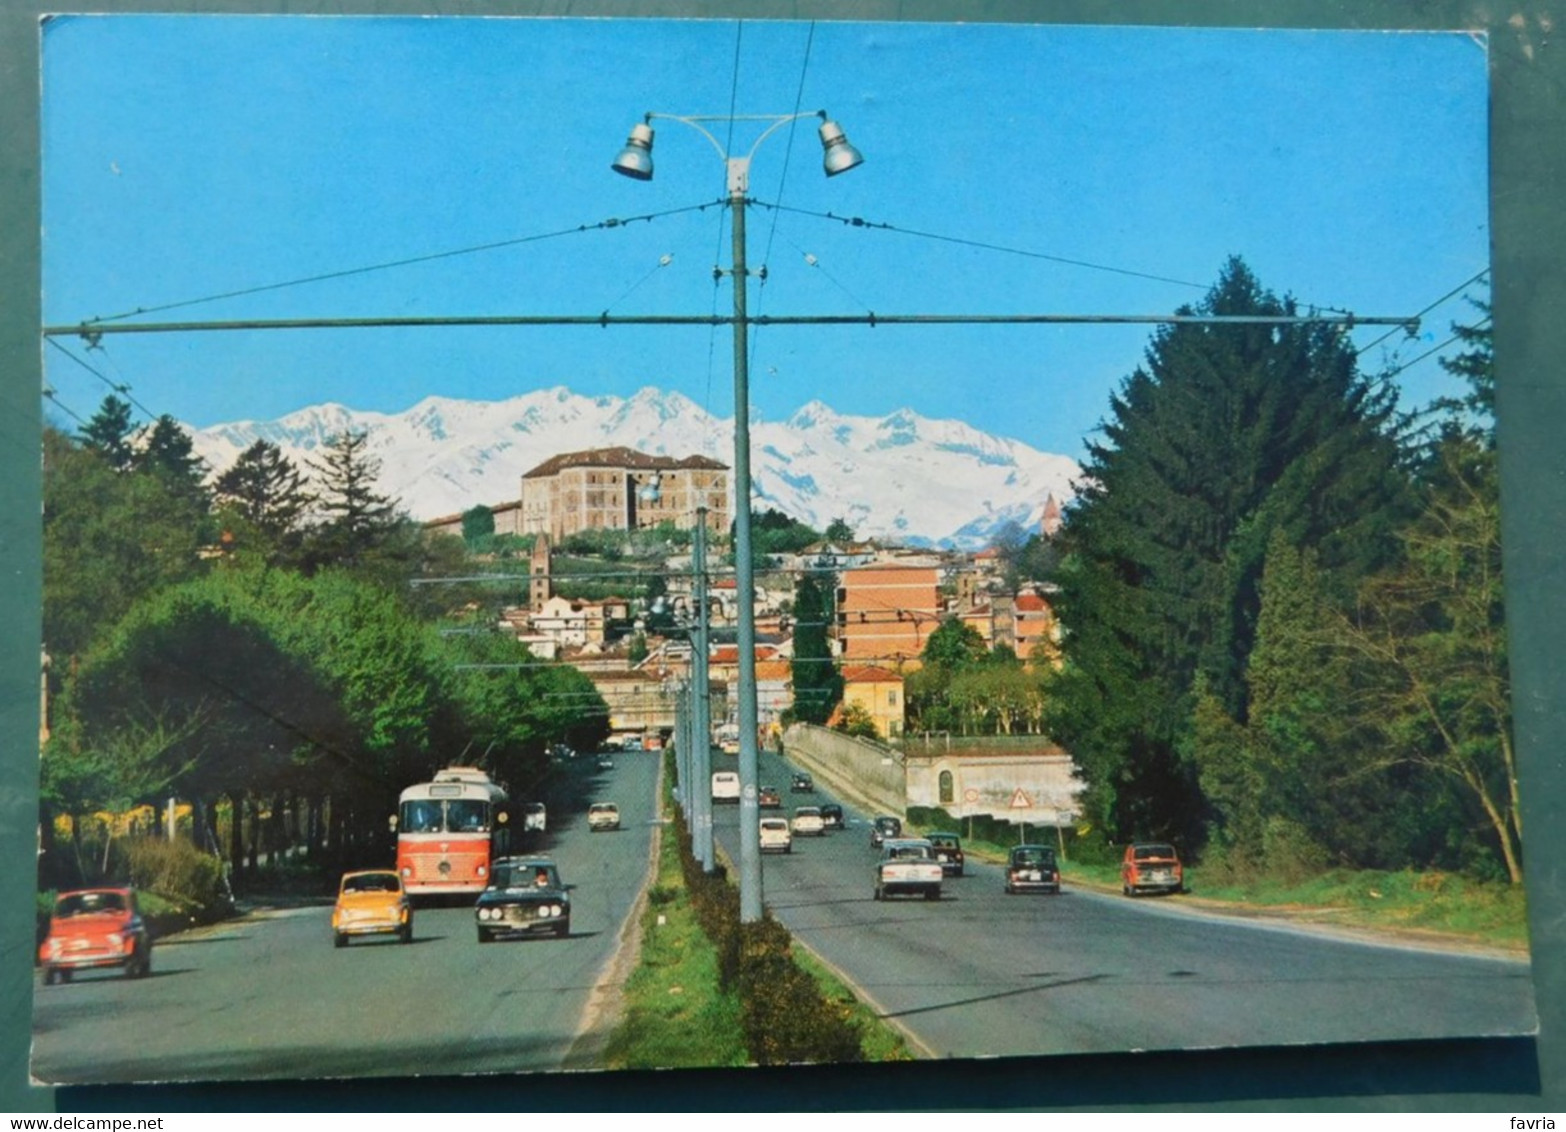 RIVOLI, C.so Torino E Il Castello  # Cartolina Viaggiata  - Destinazione Ivrea - Rivoli